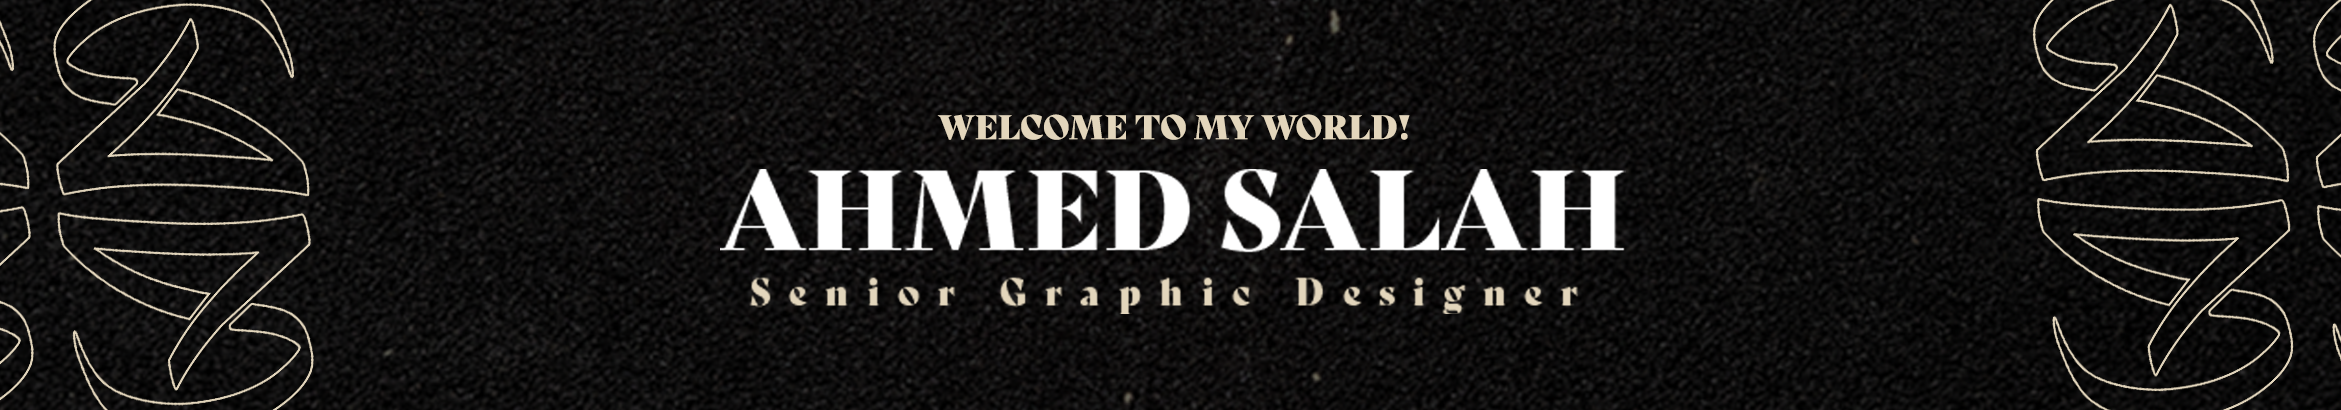 Ahmed Salah ⁦⁦⁦✪'s profile banner